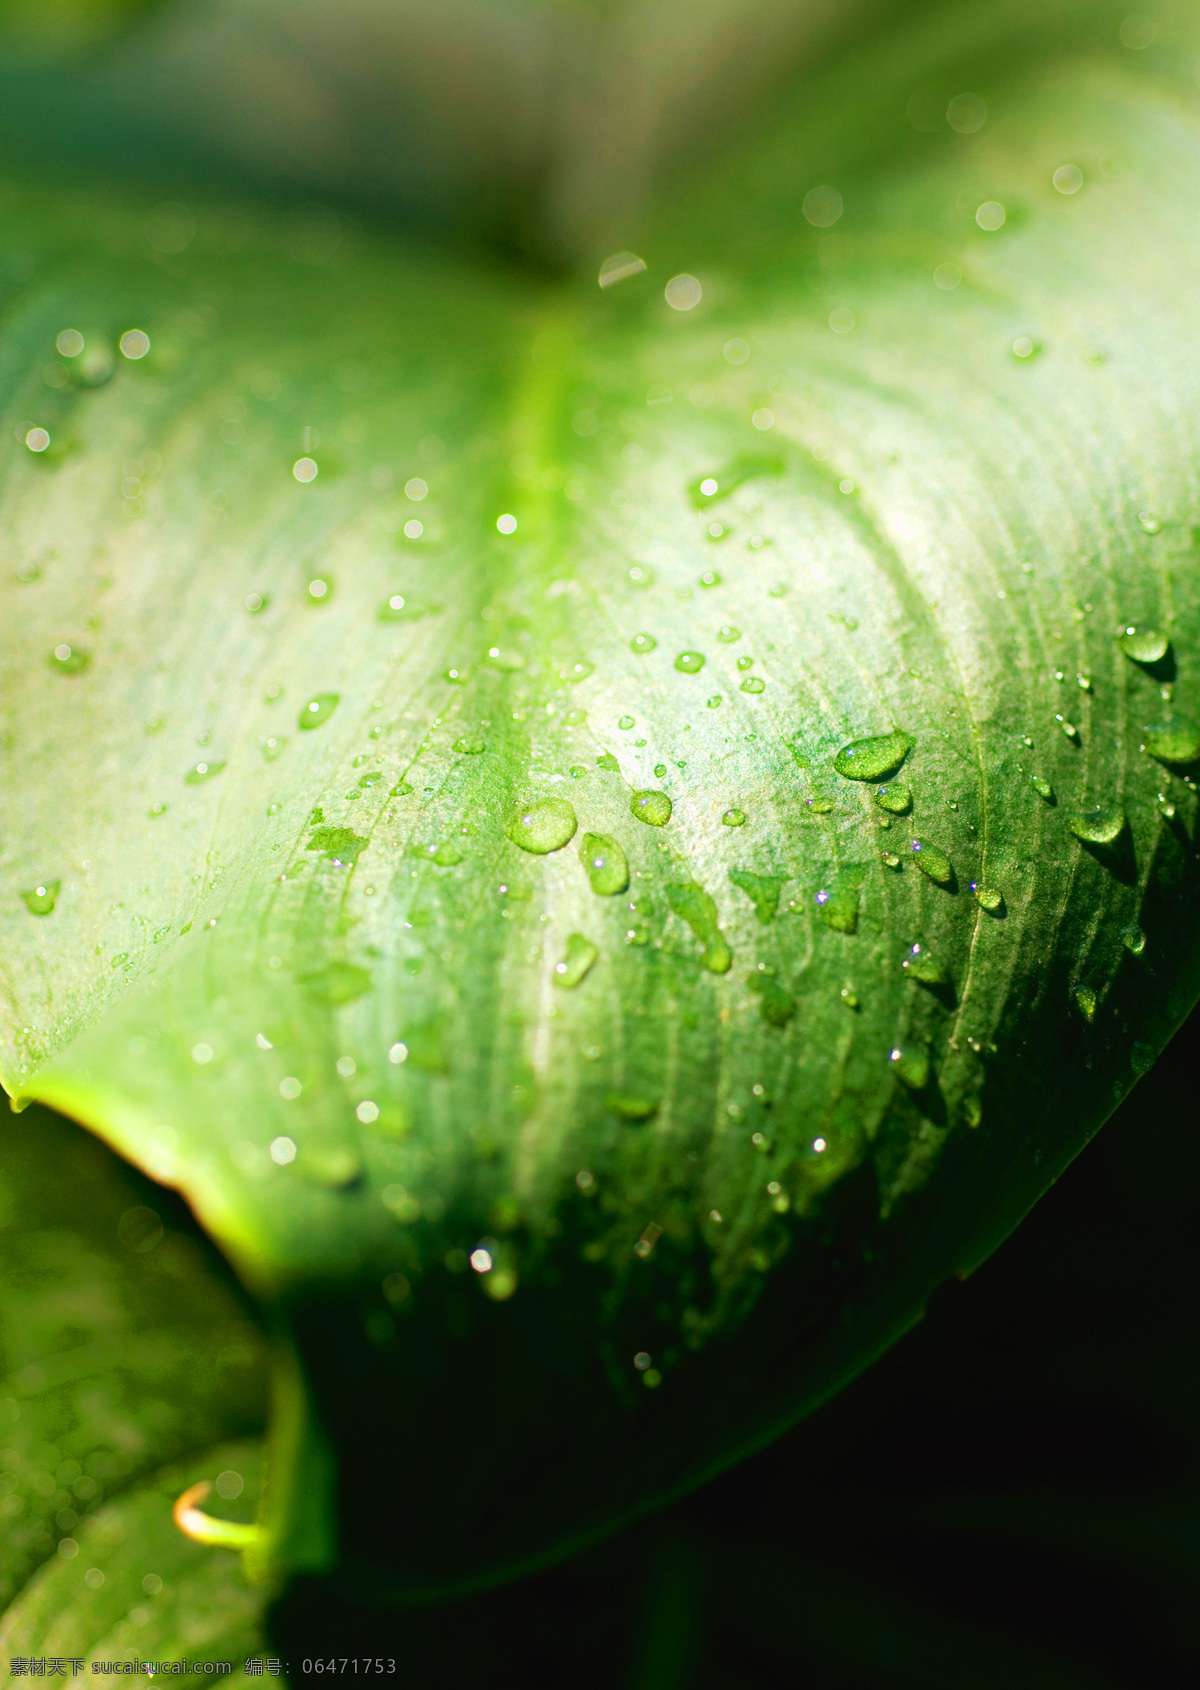 高清图片 绿叶 生物世界 树木树叶 树叶 水滴 水珠 特写 绿叶特写图片 植物 微距摄影